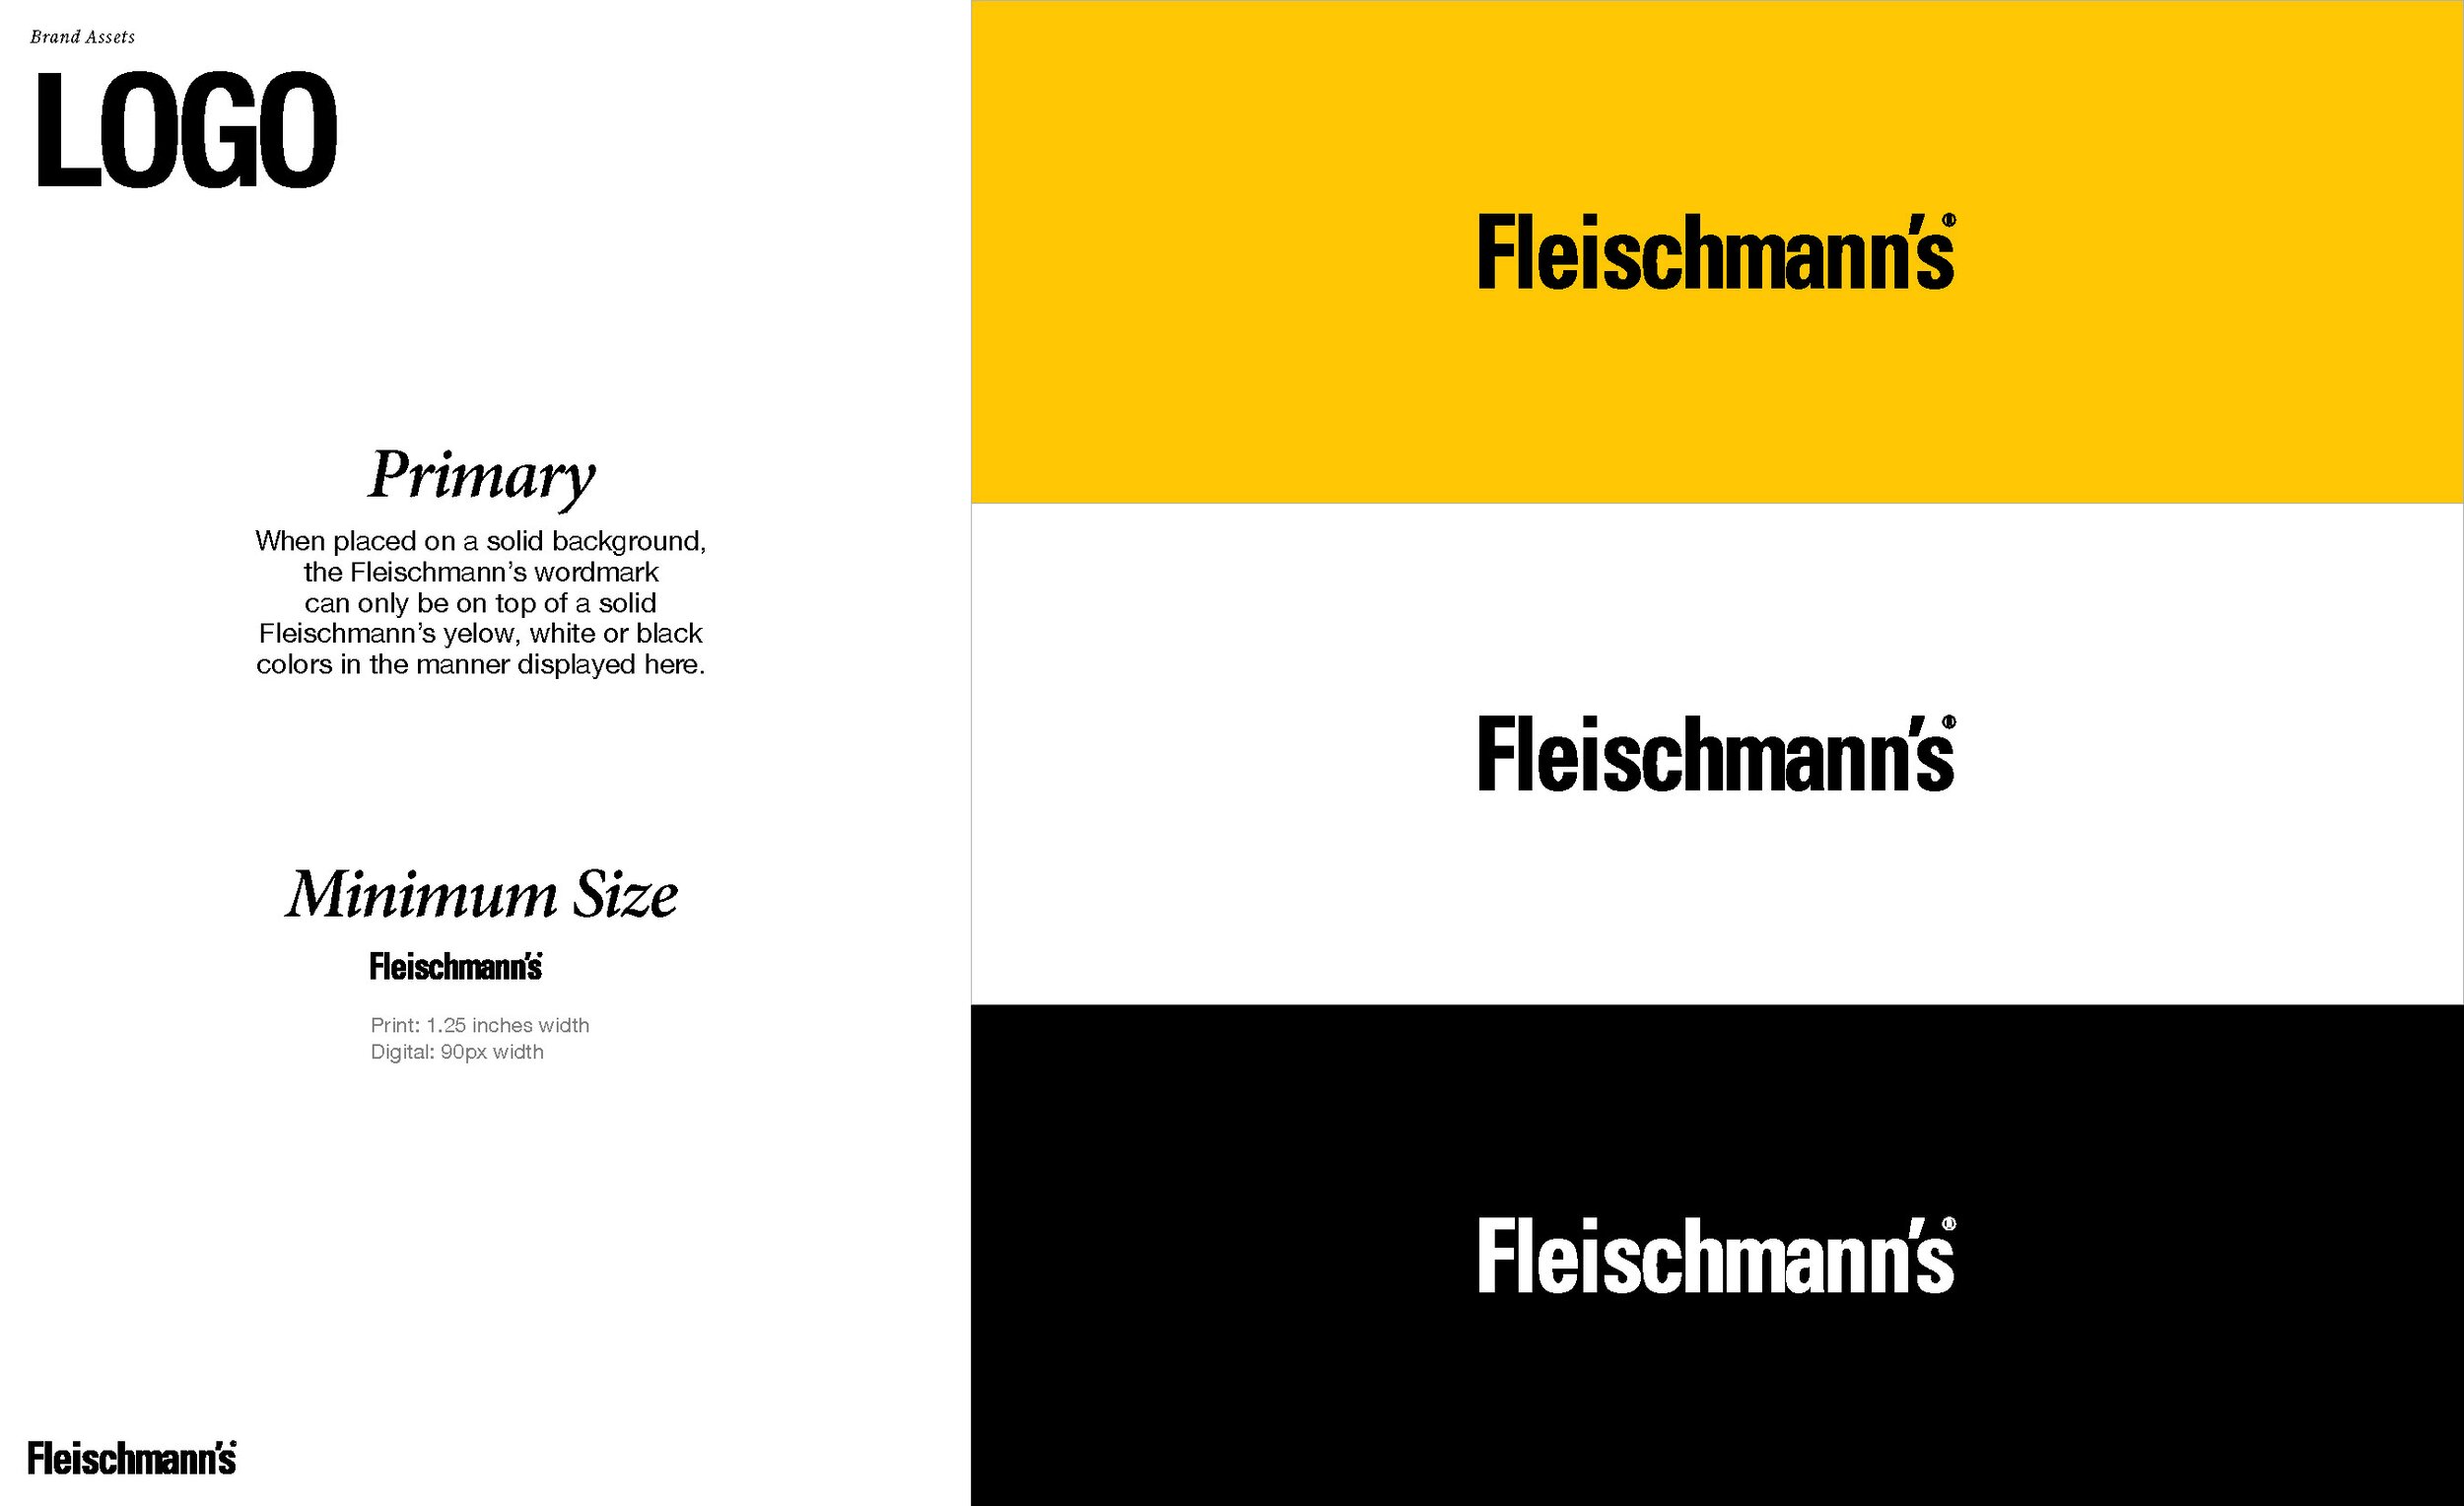 Fleischmann's Guidelines 5_Page_07.jpg